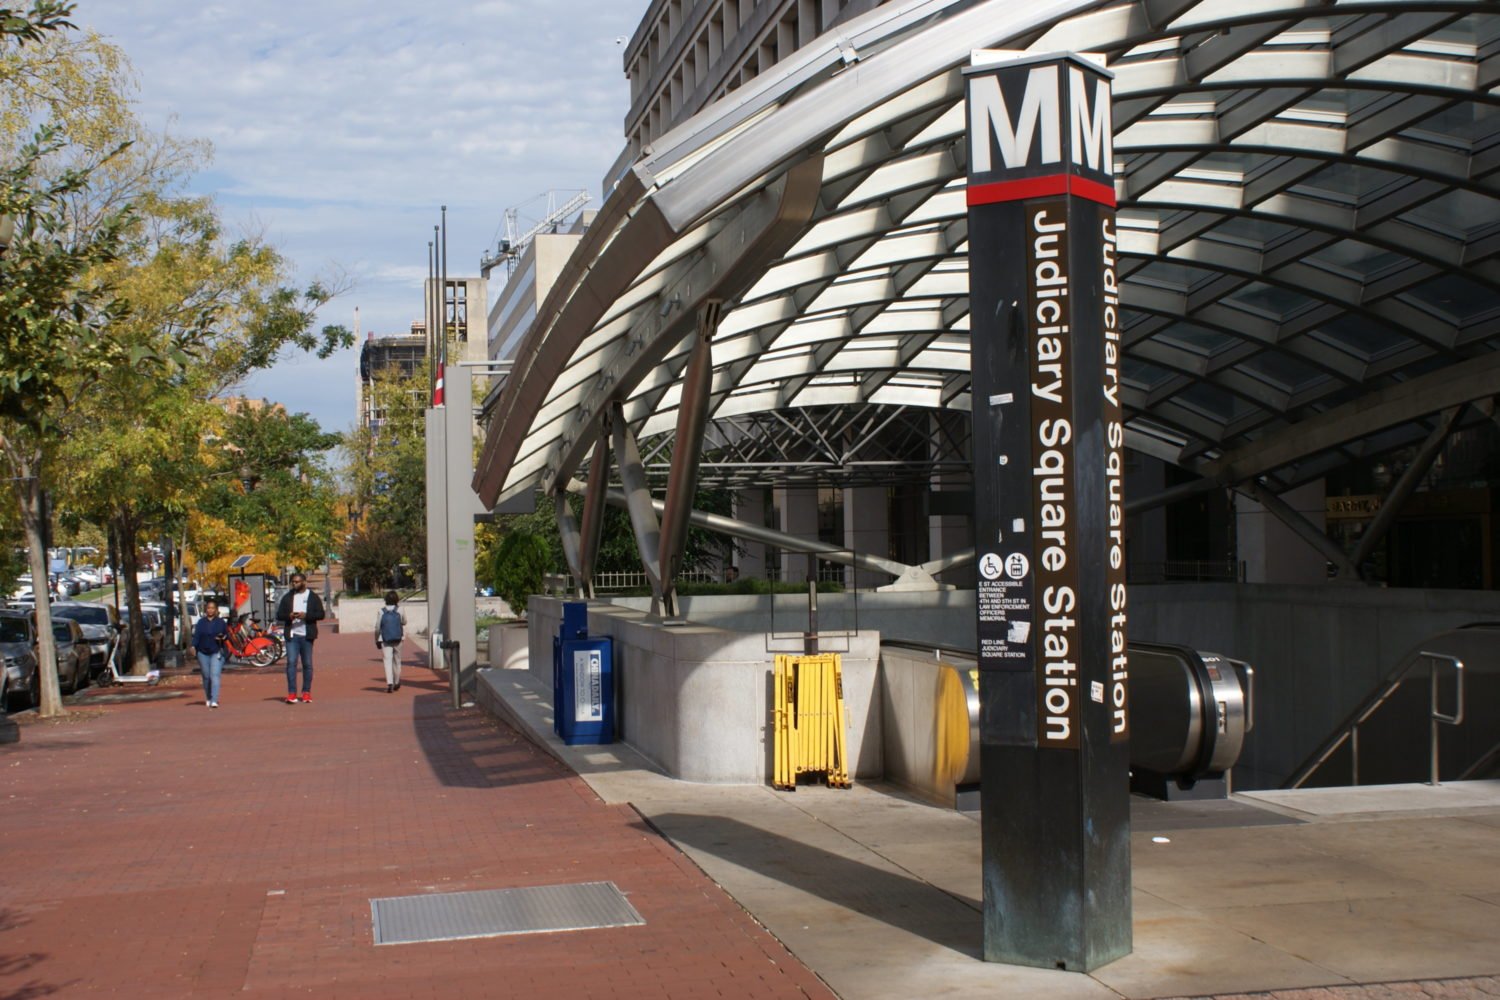 The Judiciary Square Metro station.